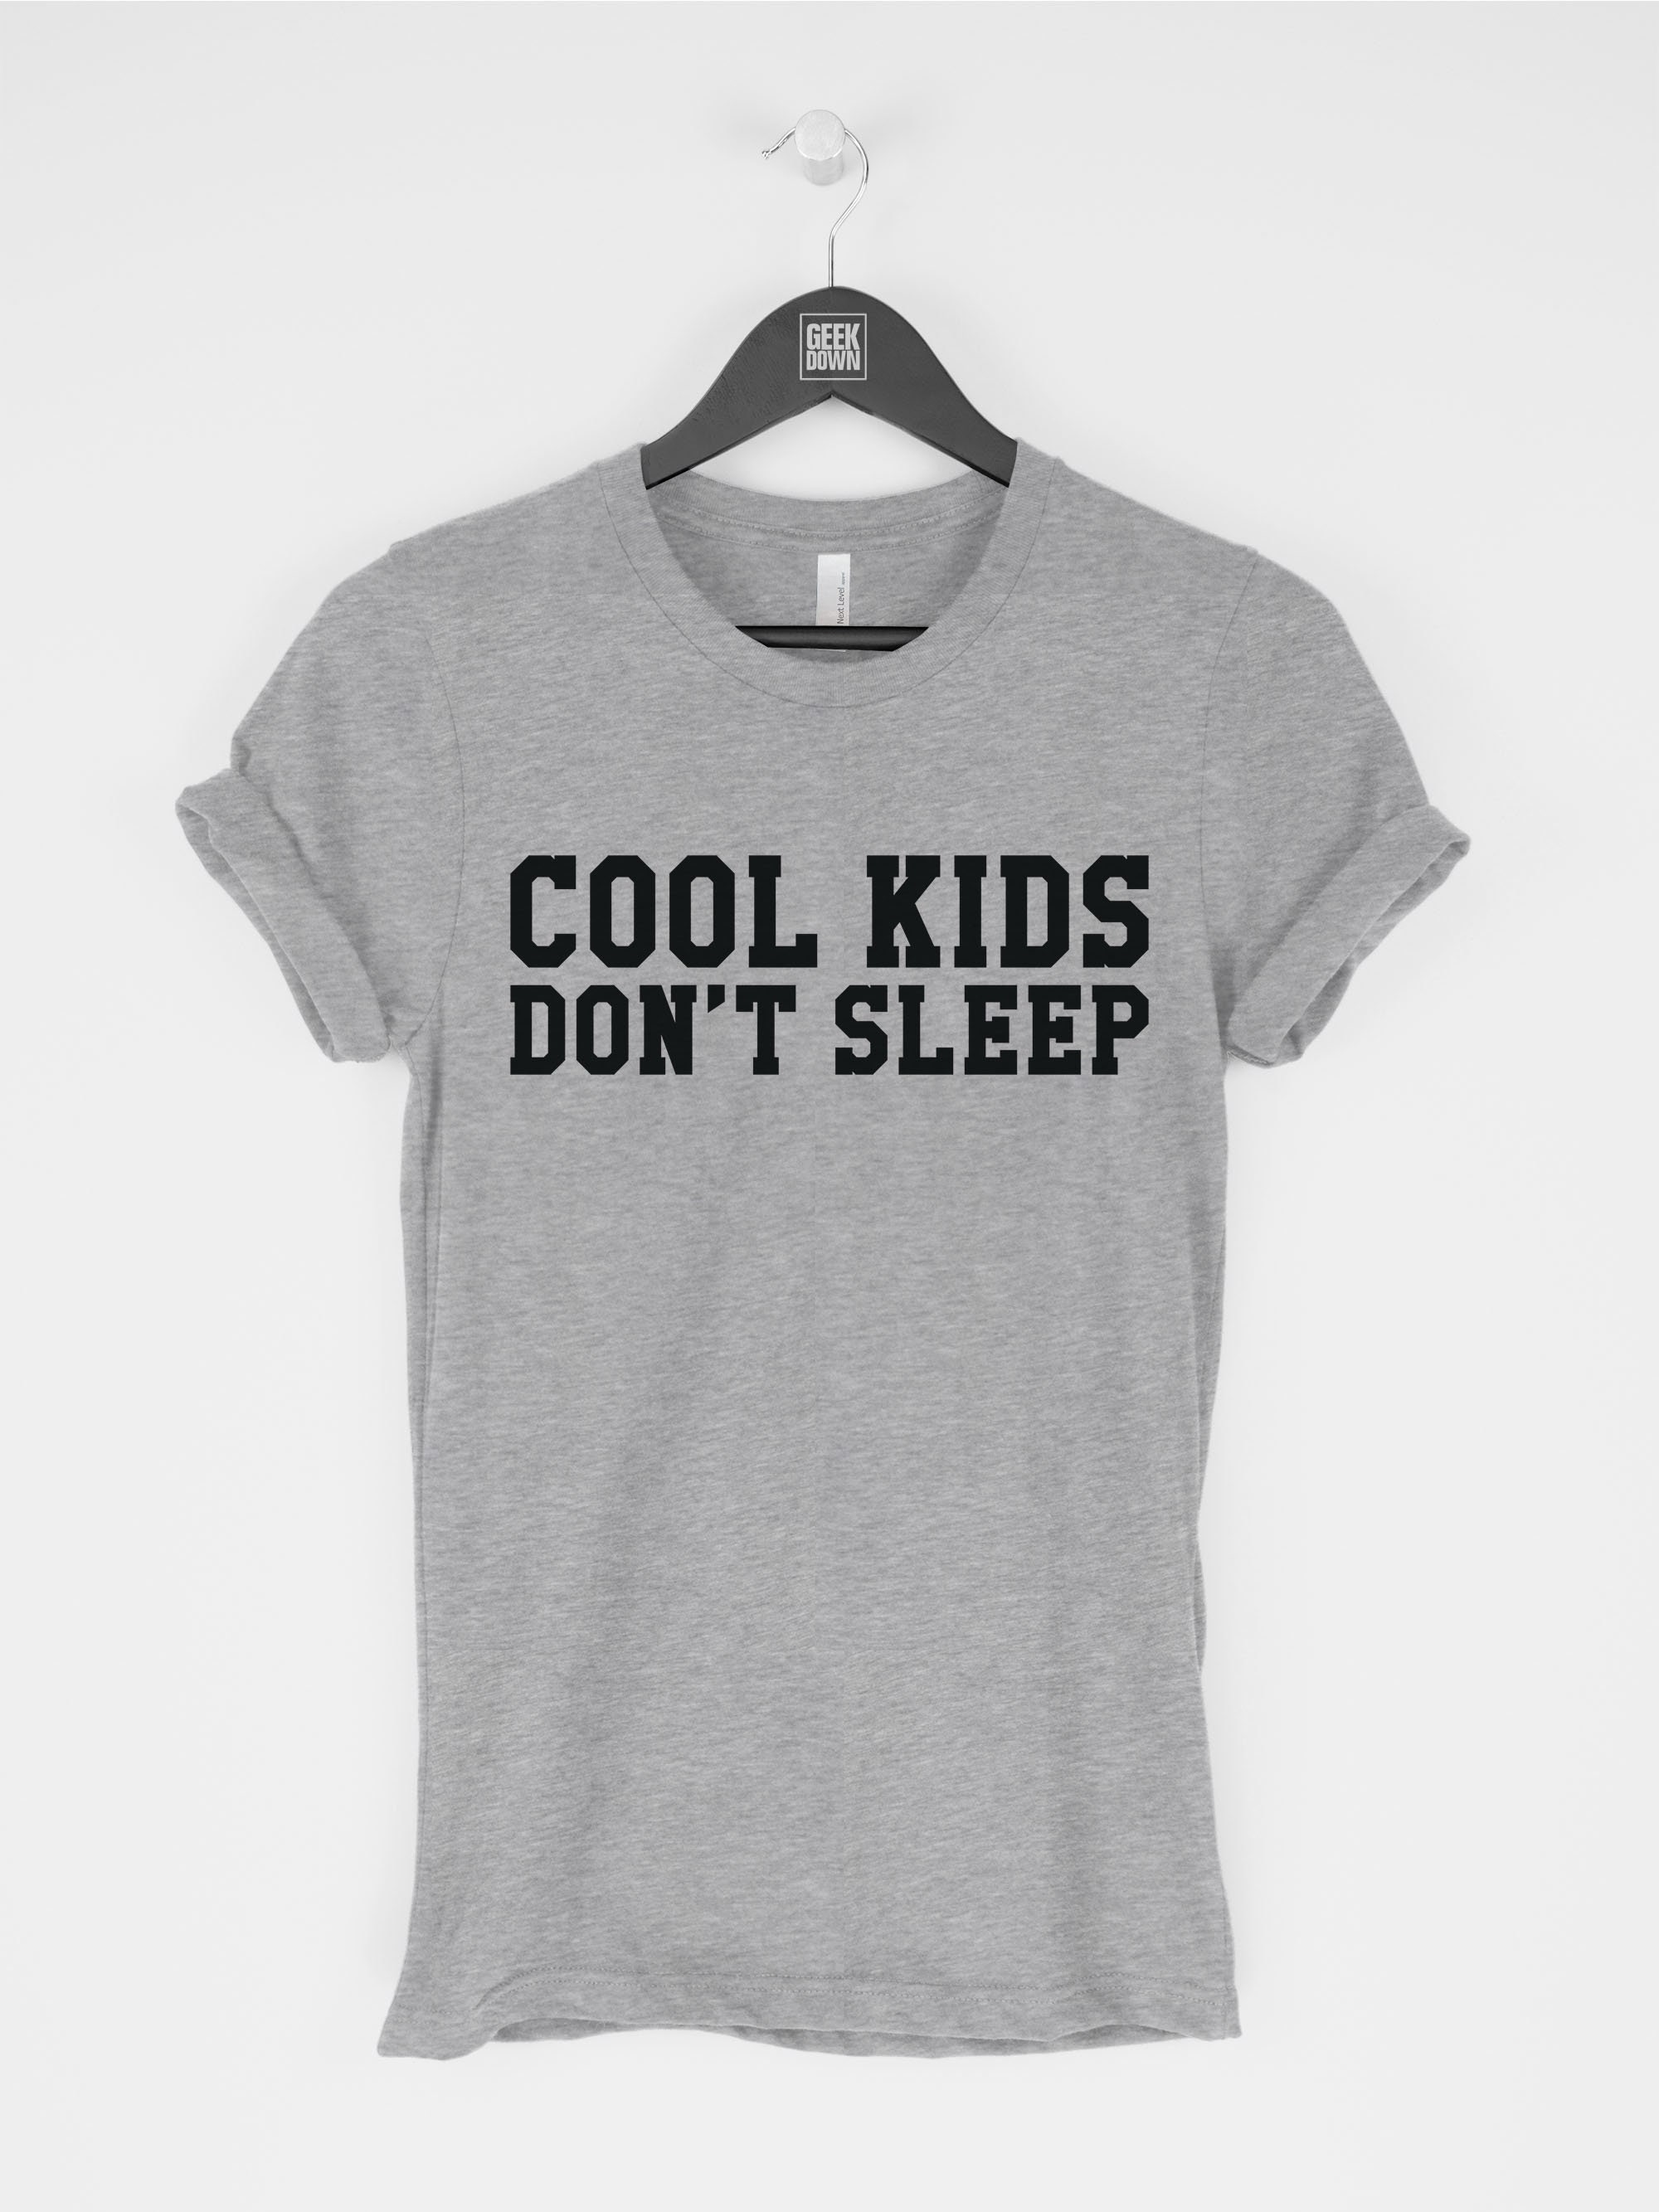 Cool Kids Don't Sleep t-shirt tee funny tees / Funny Tee | Etsy